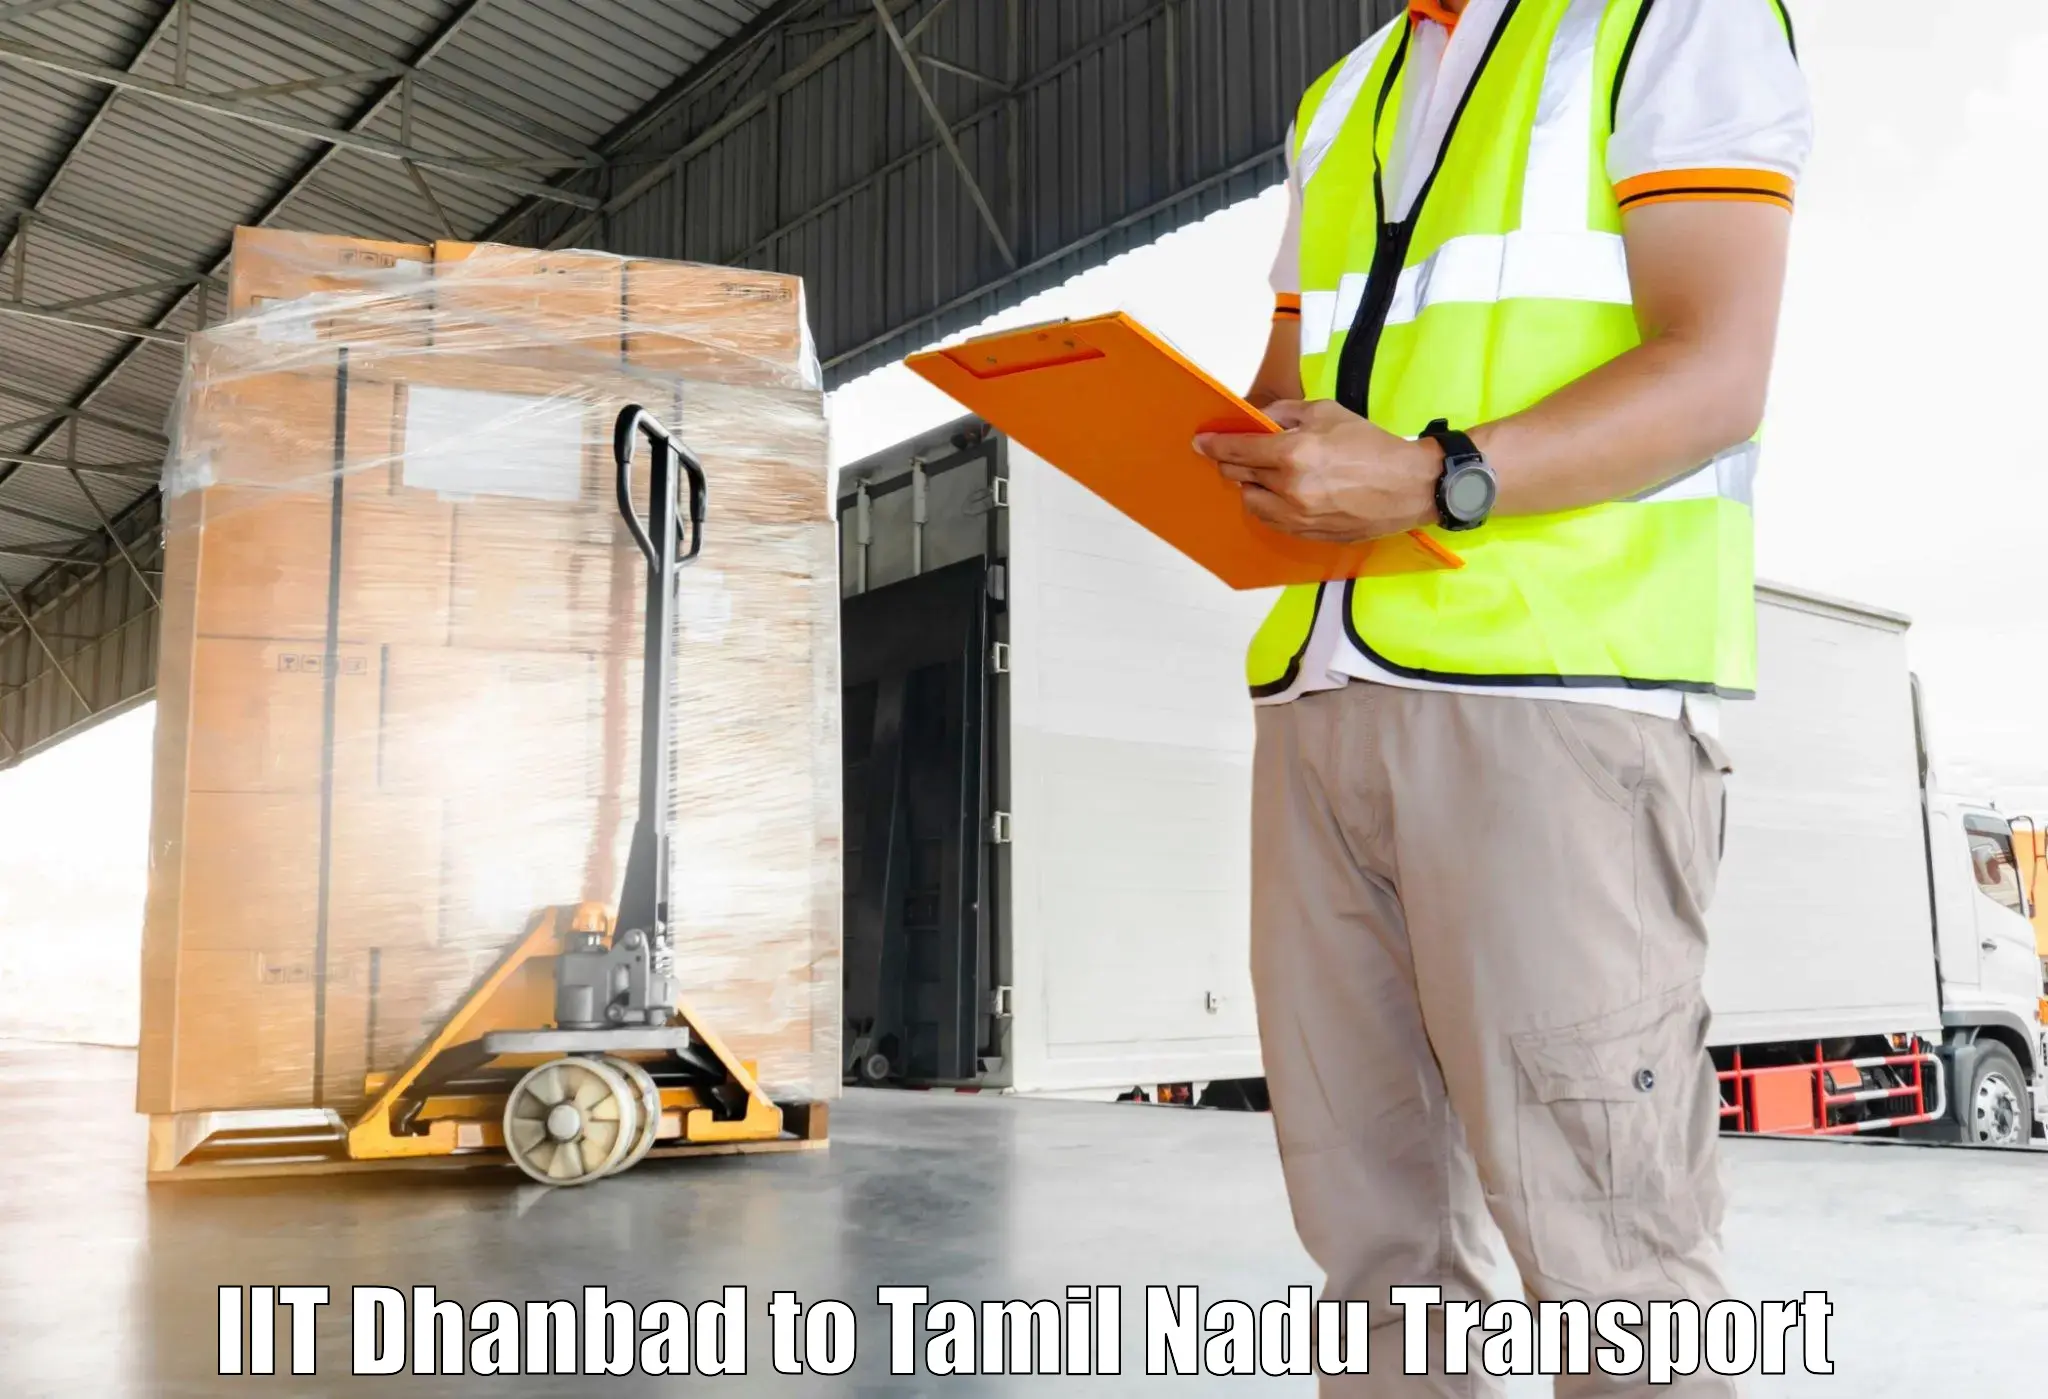 Transport shared services IIT Dhanbad to Devakottai